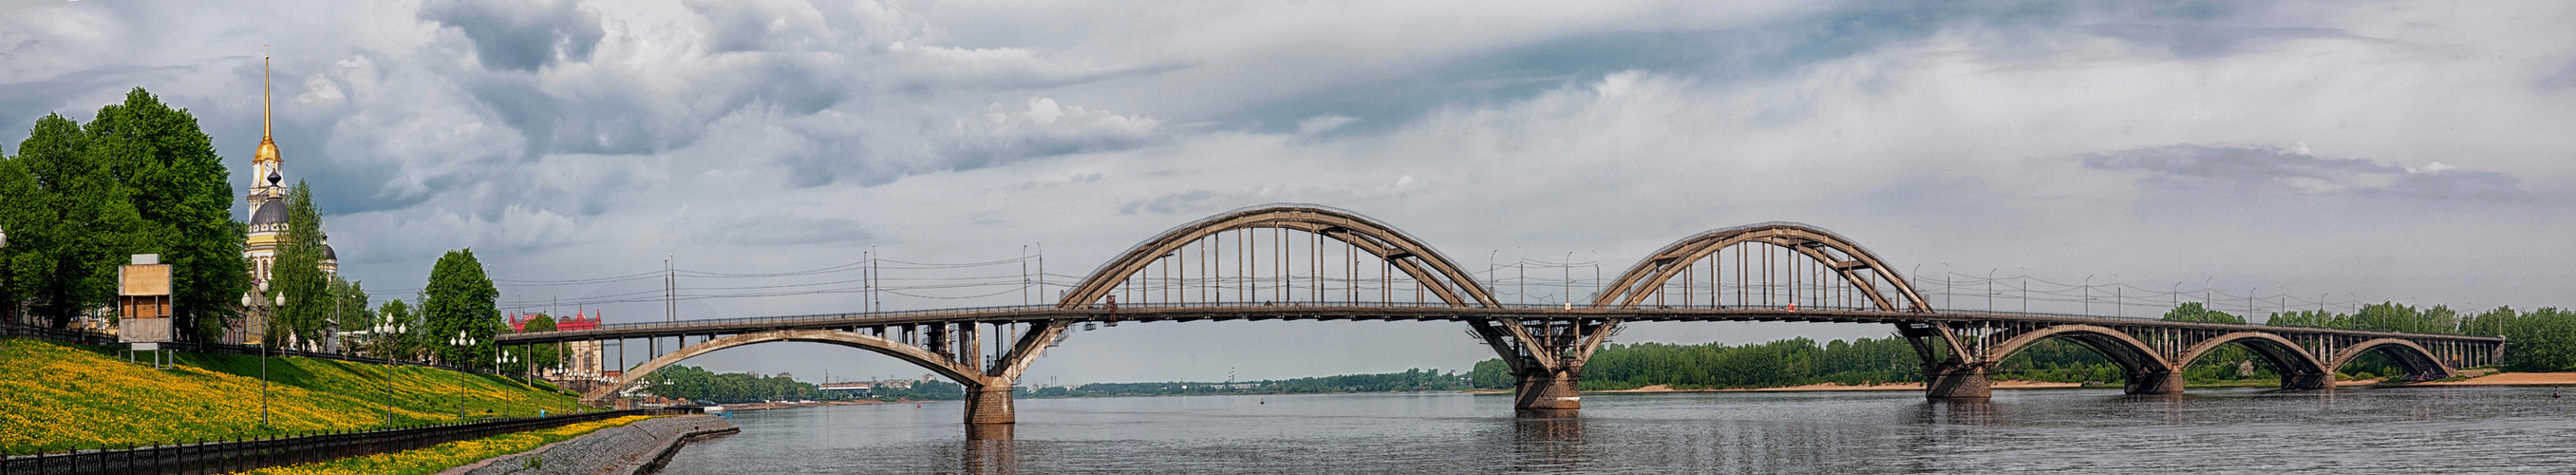 Rybinsk - Brücke über die Wolga